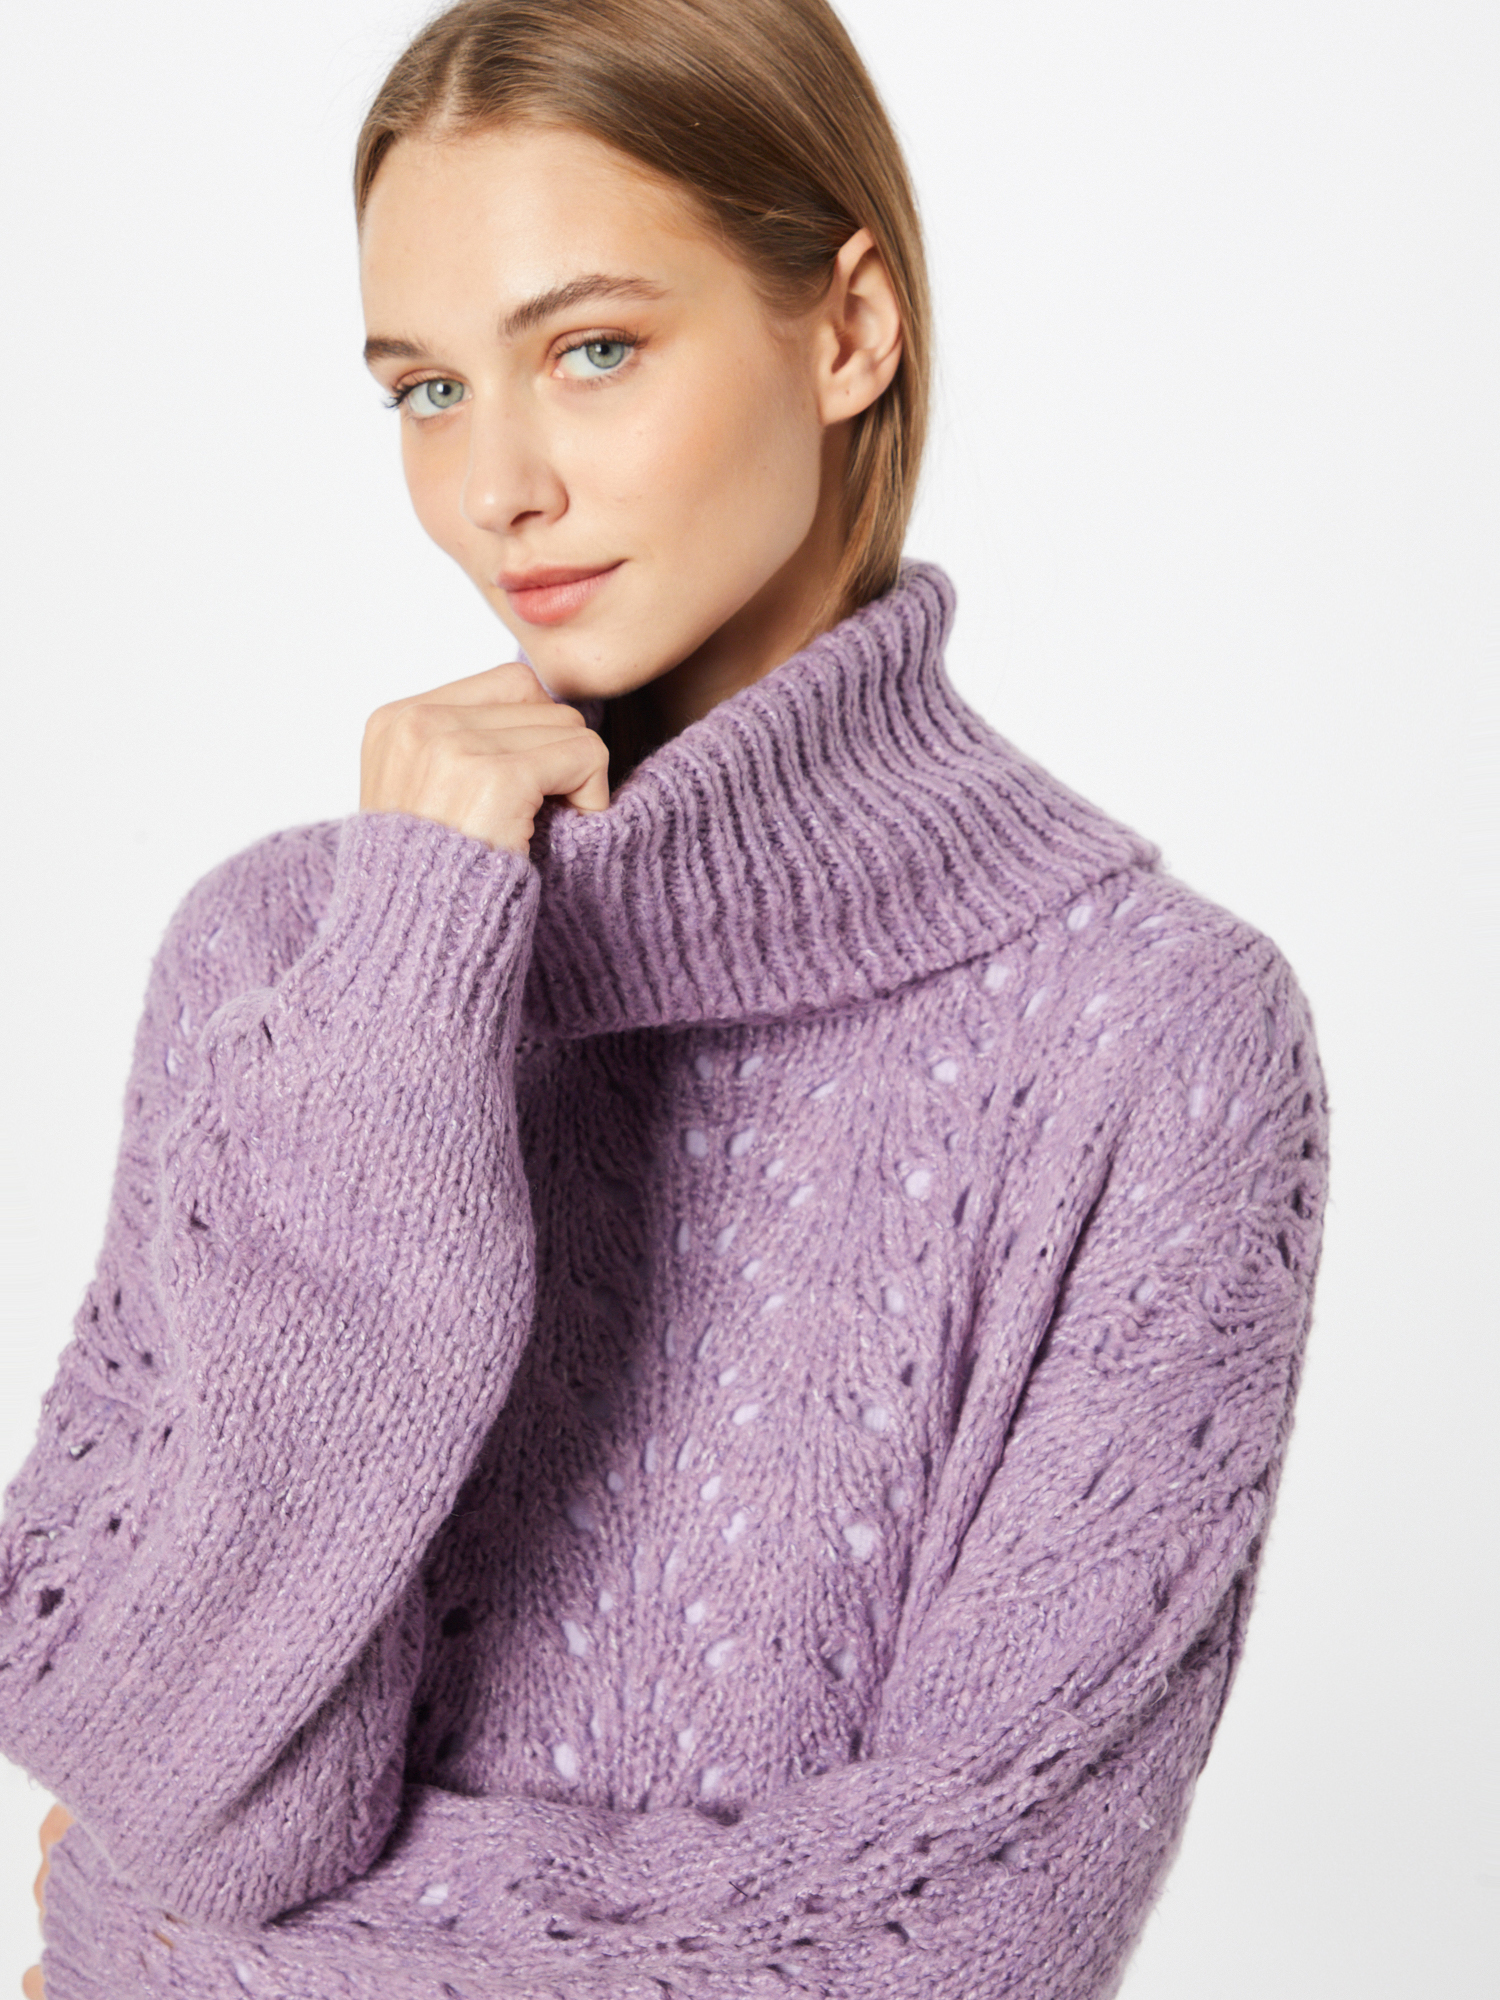 Swetry & dzianina Odzież JDY Sweter TRICY w kolorze Jasnofioletowym 